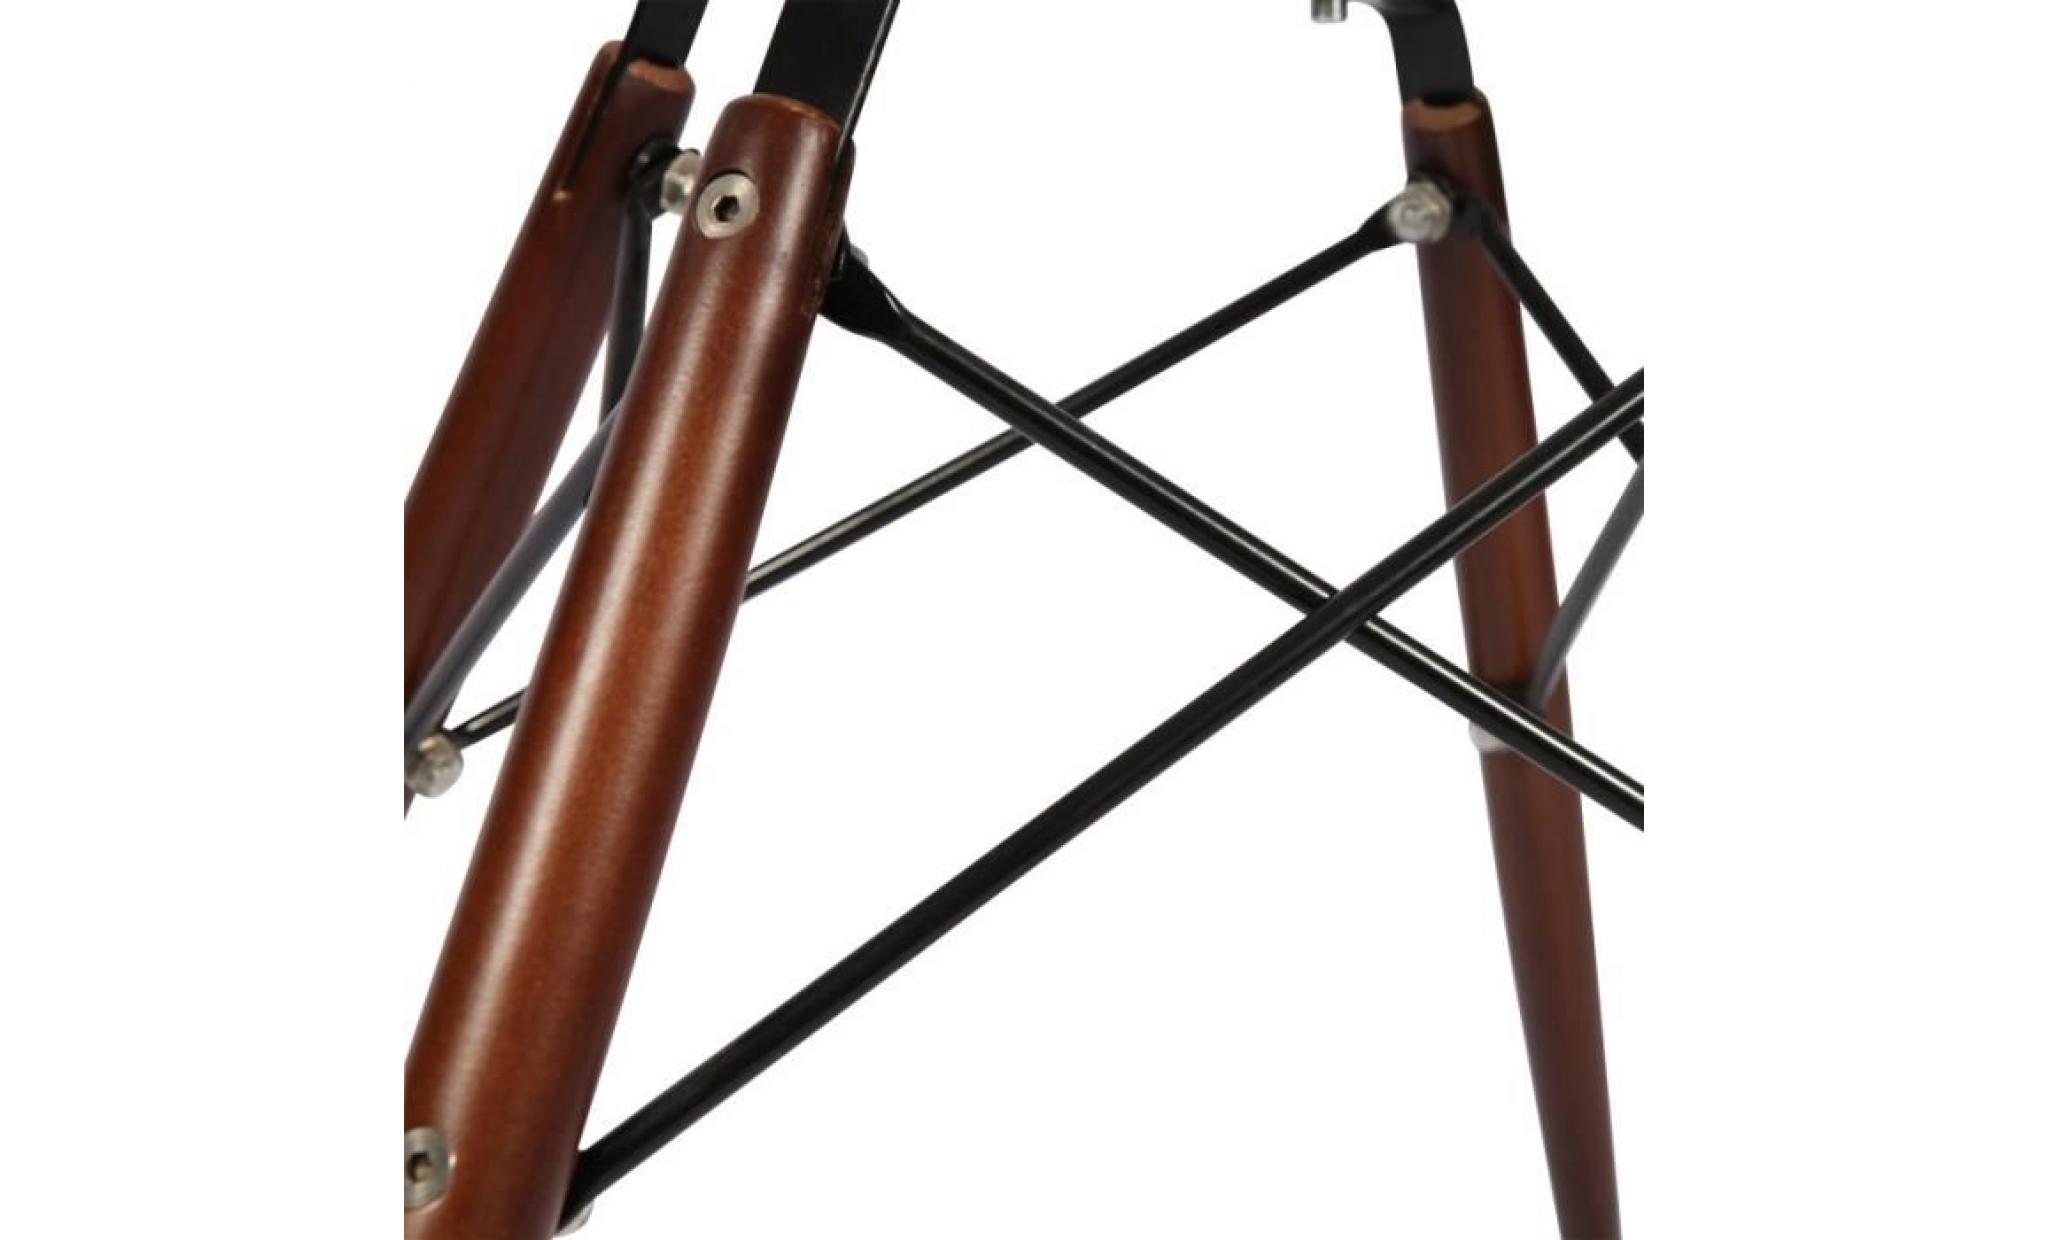 1 x fauteuil design retro style eames daw hauteur 48cm pieds en bois vernis noyer assise graphite mobistyl® pas cher